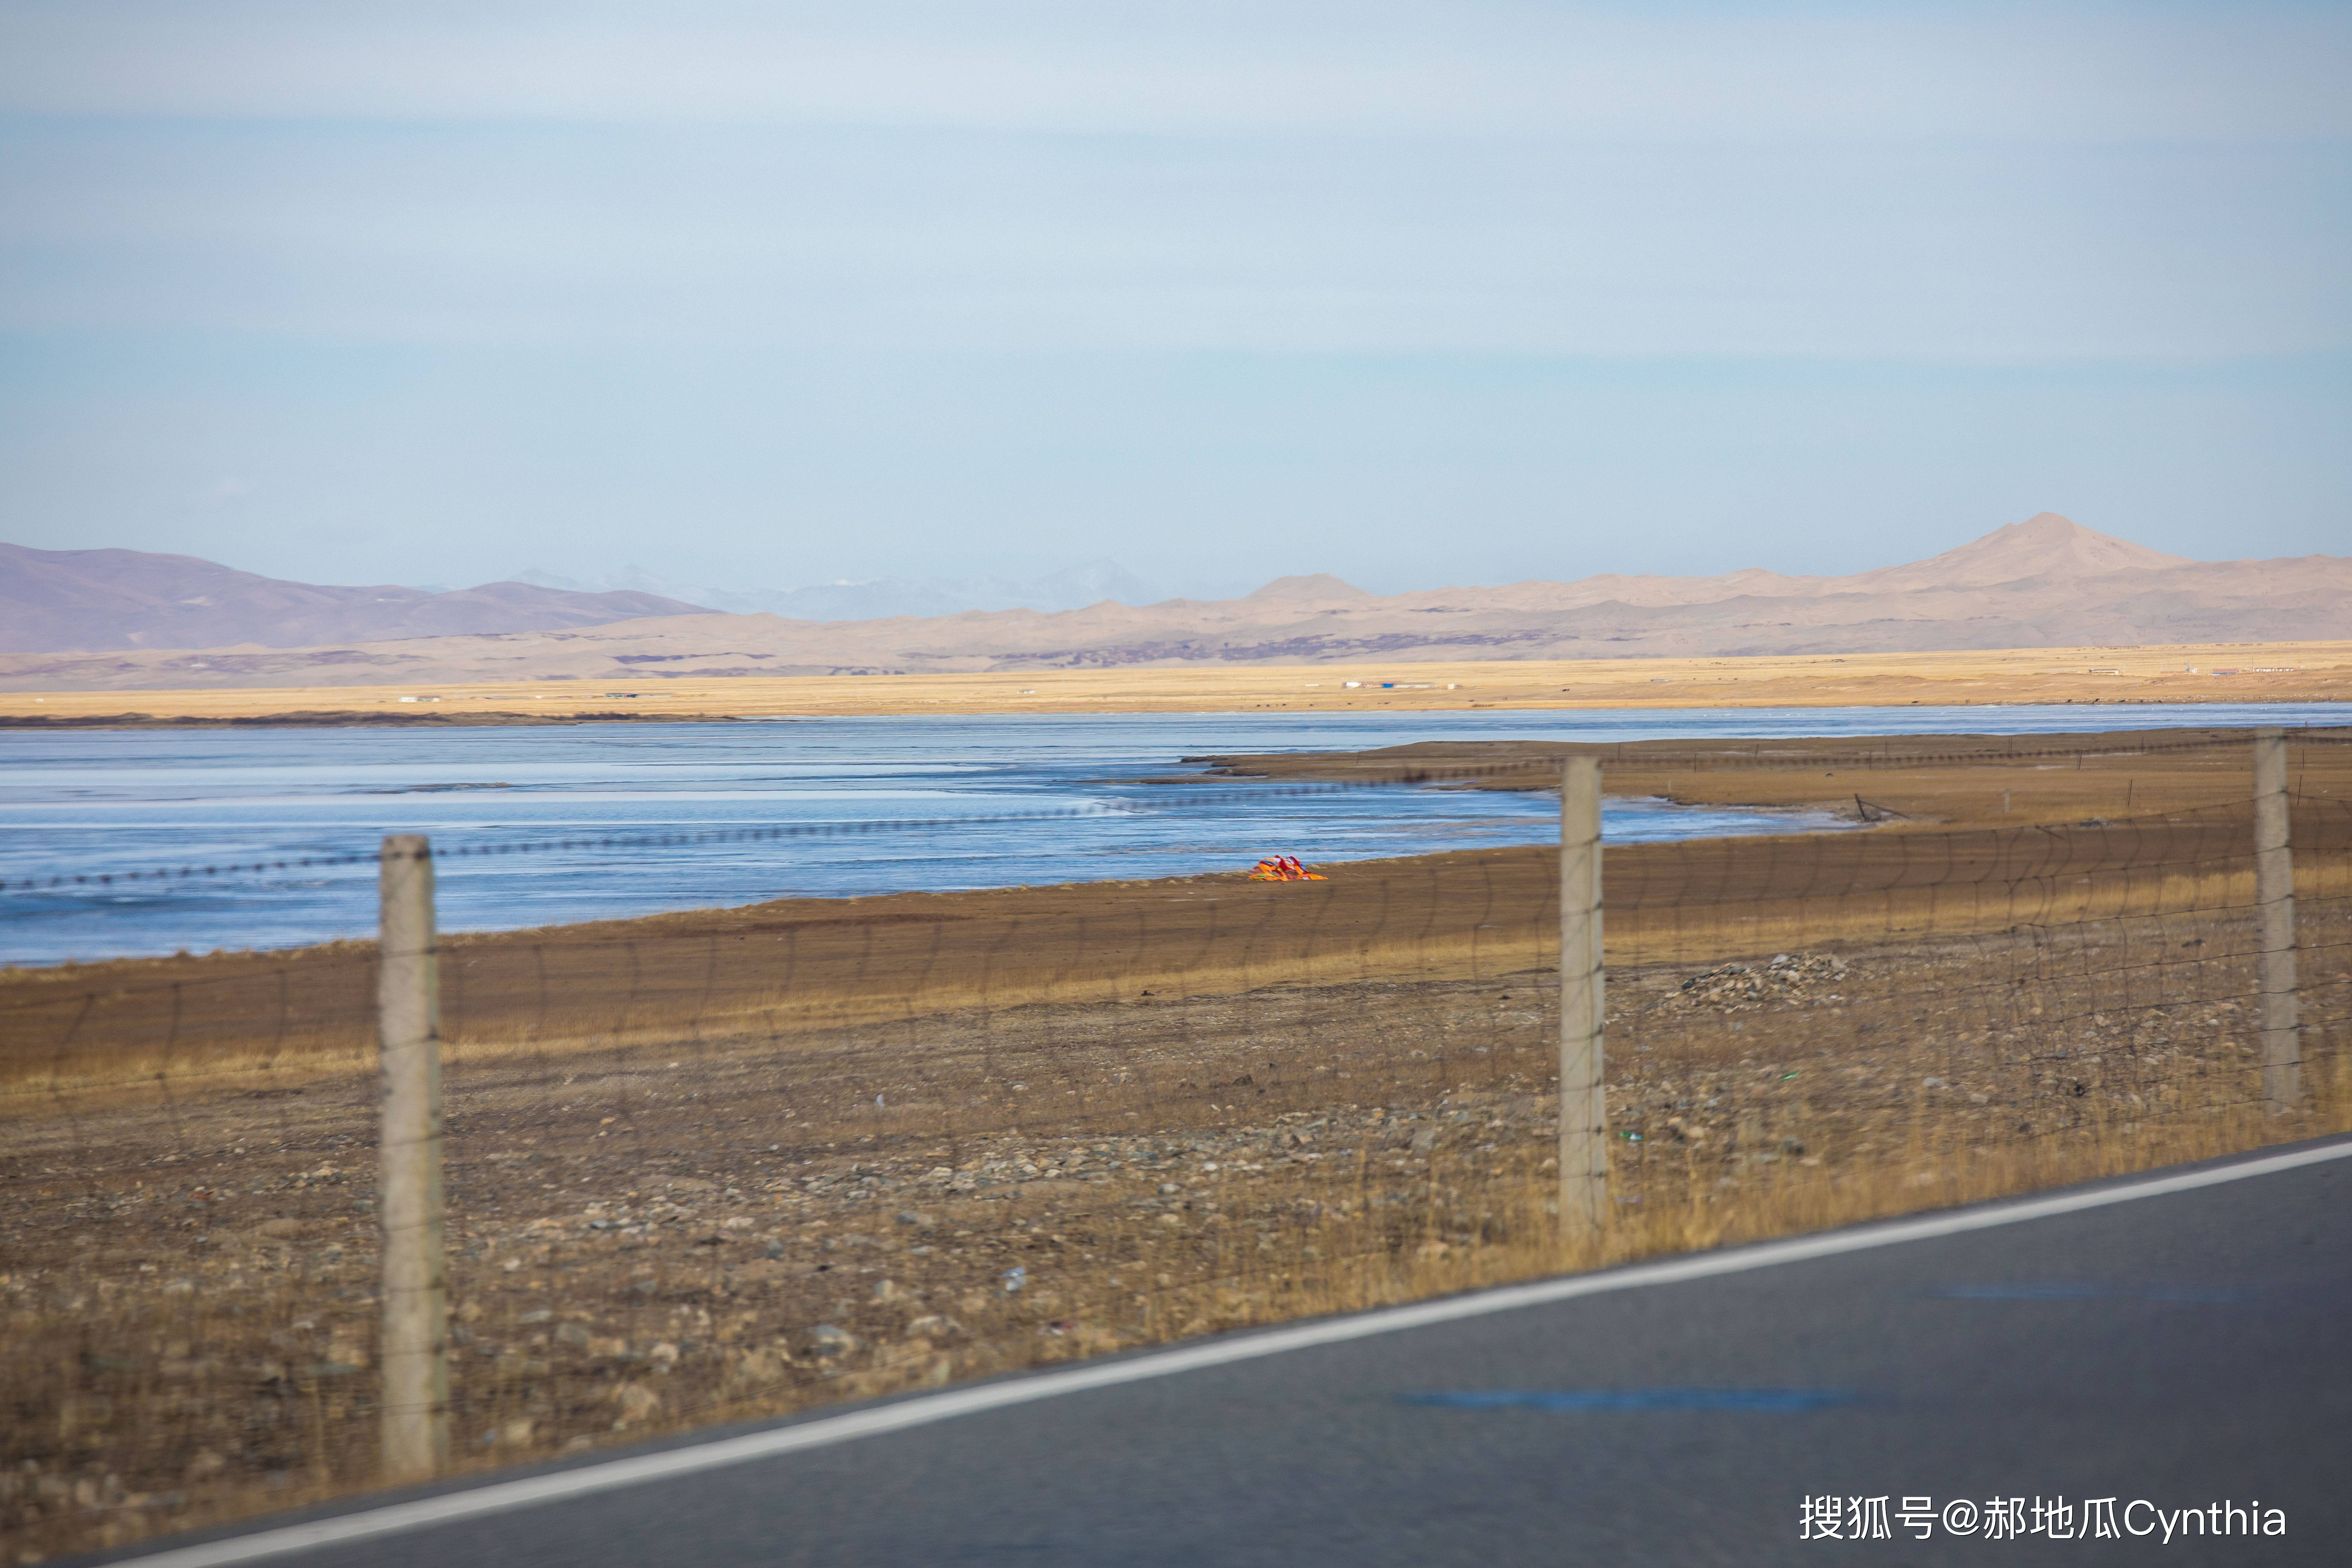 青海湖边有条十几公里的道路竟出现了沙漠，呈现一片金黄色